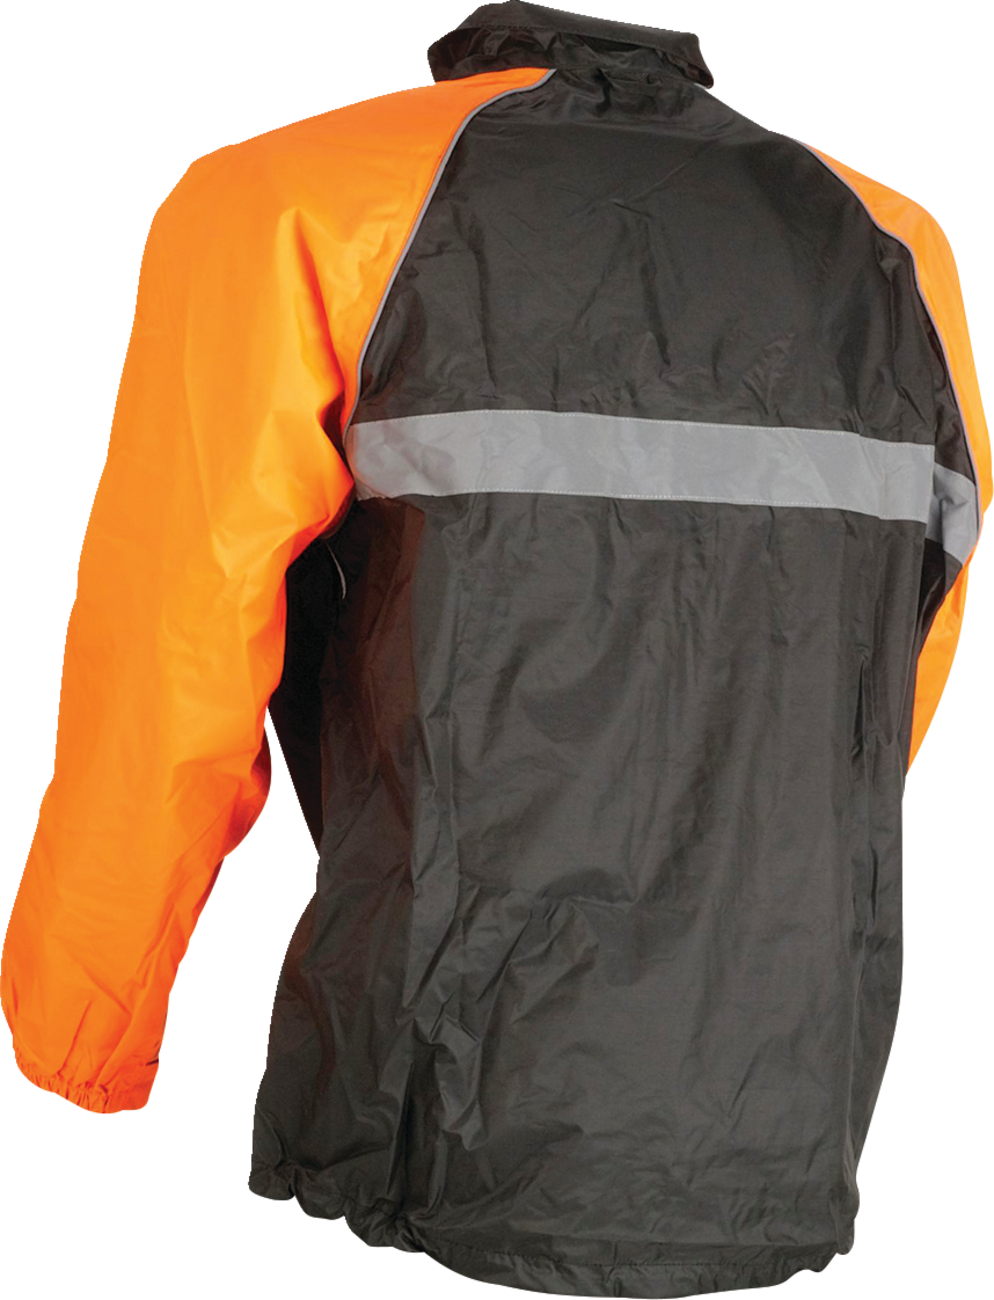 Z1R Waterproof Jacket - Orange - Medium 2854-0340